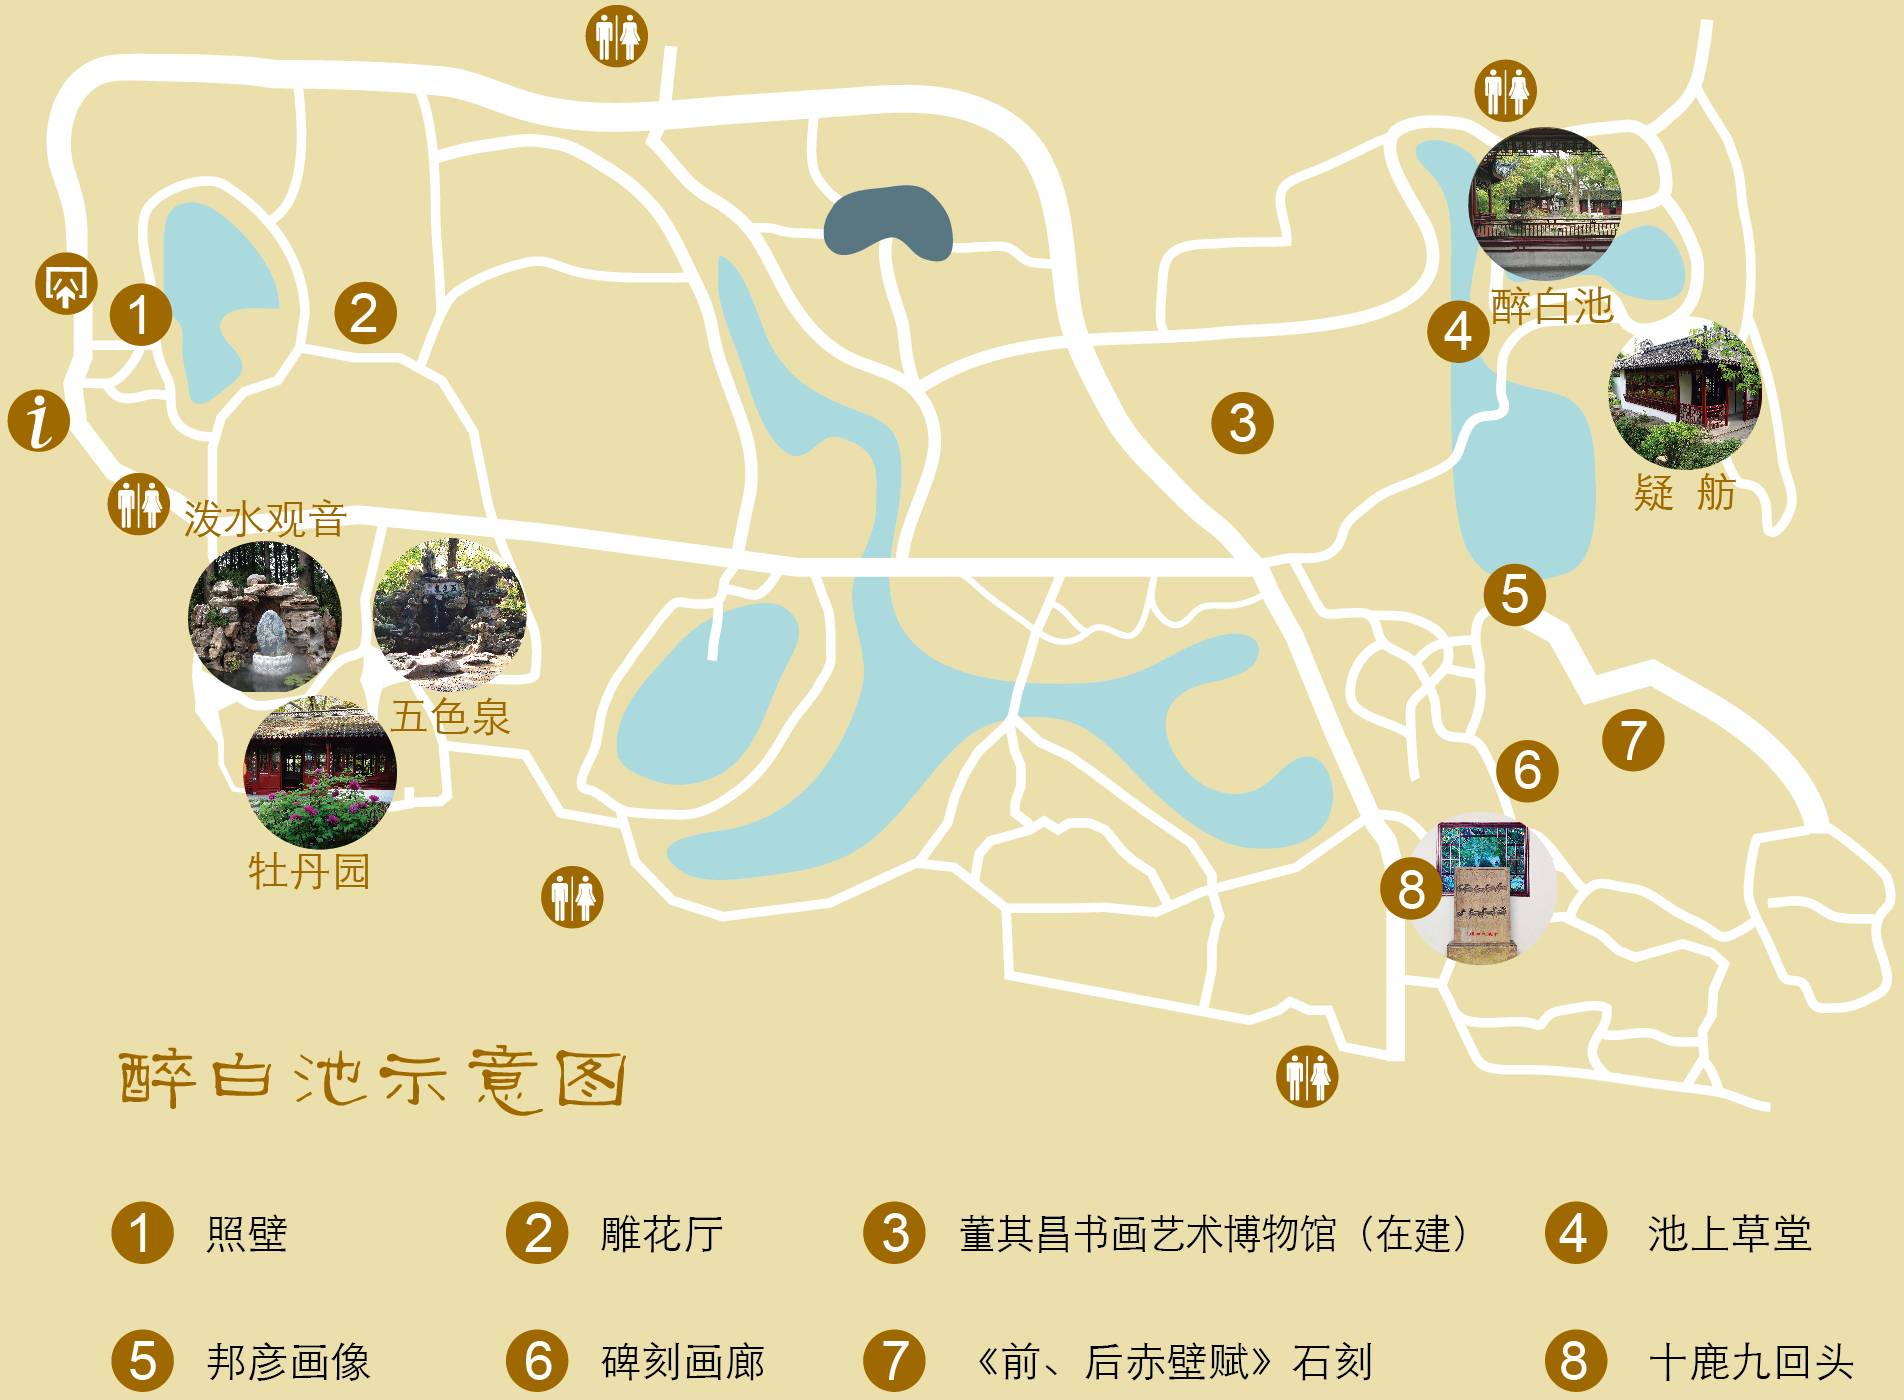 松江醉白池公园地图图片